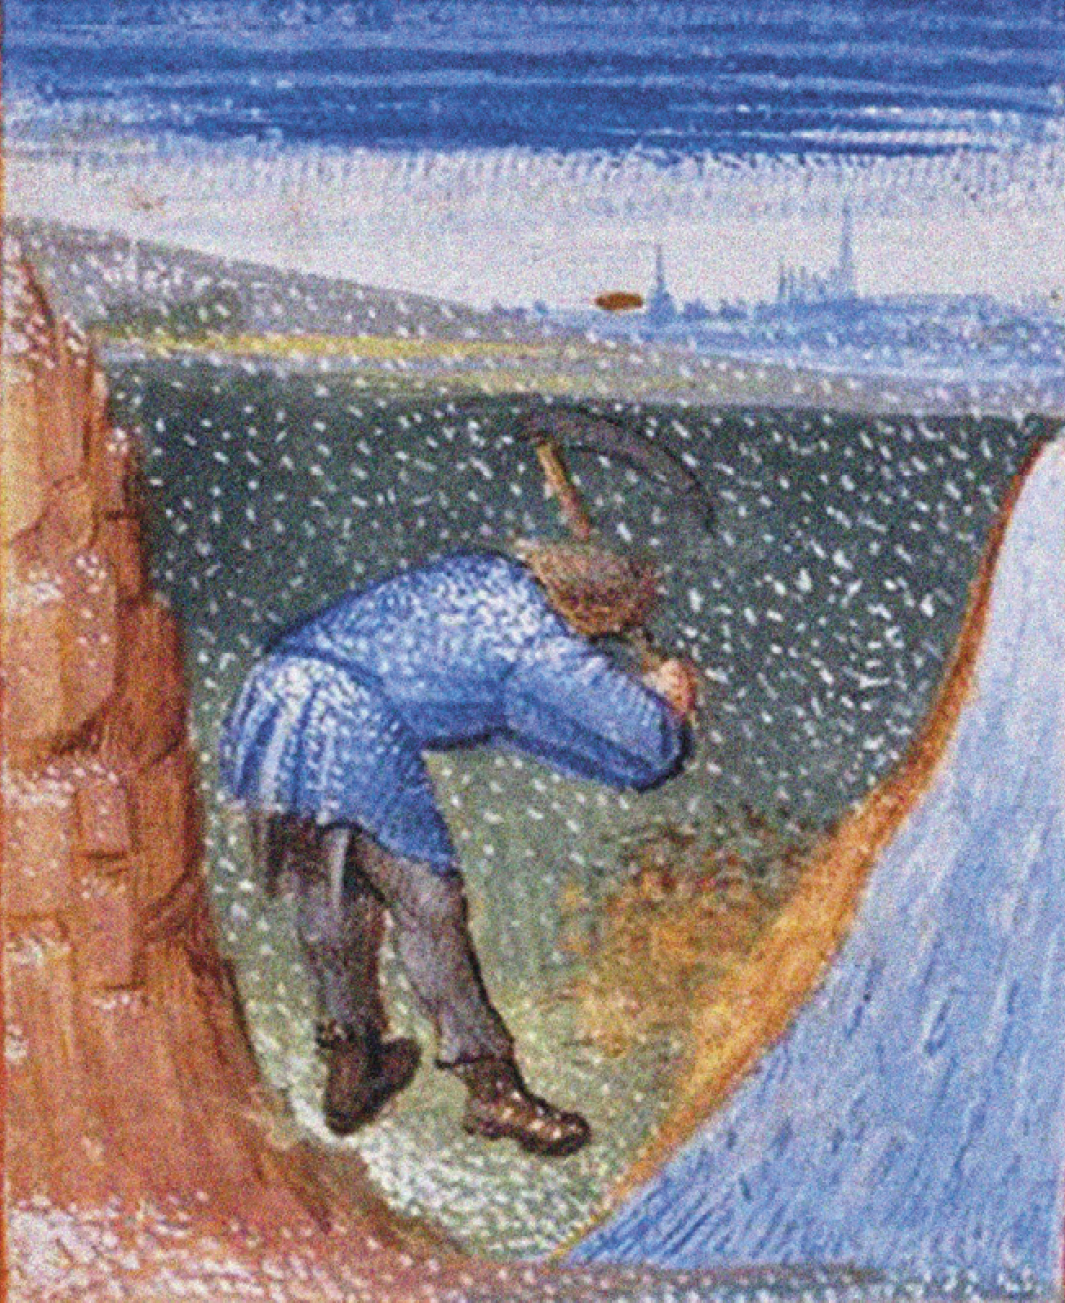 Pintura. Homem usando camisa comprida azul, calça preta e botas trabalha com uma enxada em um campo. Do lado esquerdo, uma encosta sem terra e, do lado direito, há um rio.